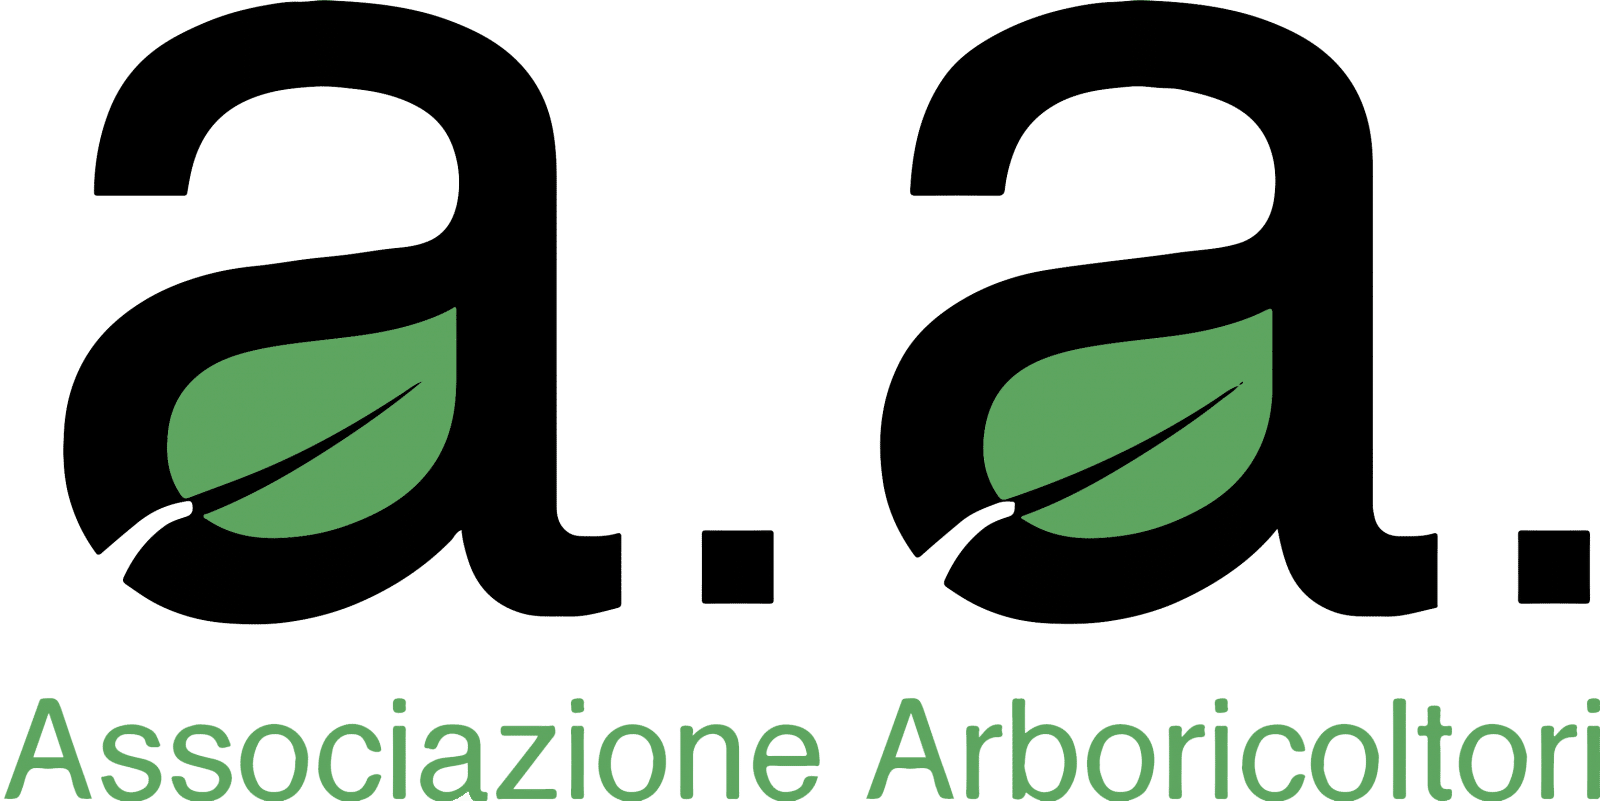 Associazione Arboricoltori